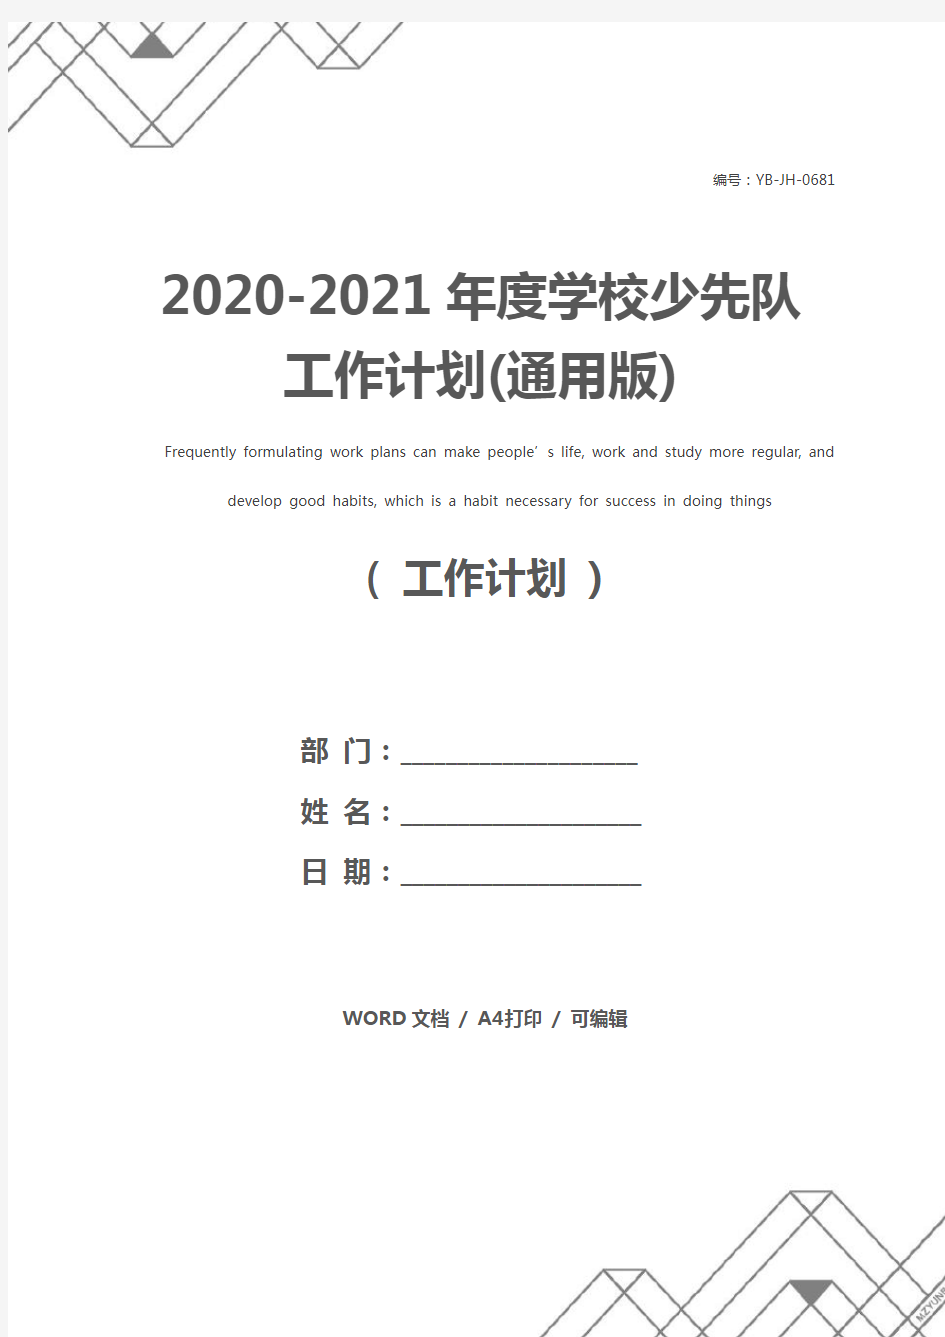 2020-2021年度学校少先队工作计划(通用版)